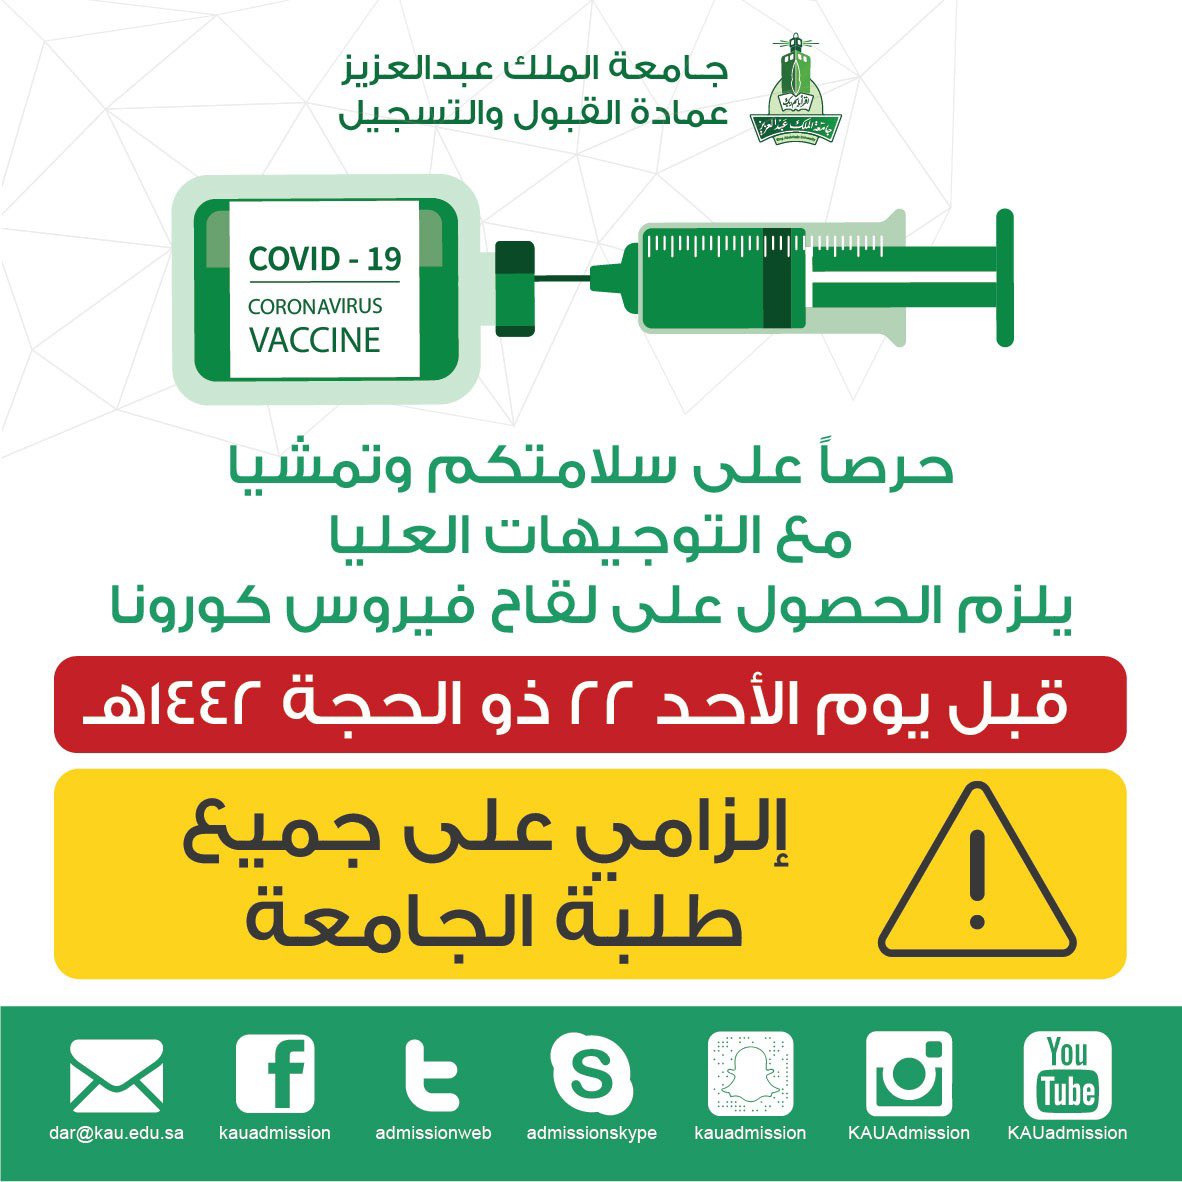 " جامعة الملك عبدالعزيز".. أول جامعة تشترط اللقاح لطلابها مستقبل الإعلام يبدأ من اليوم